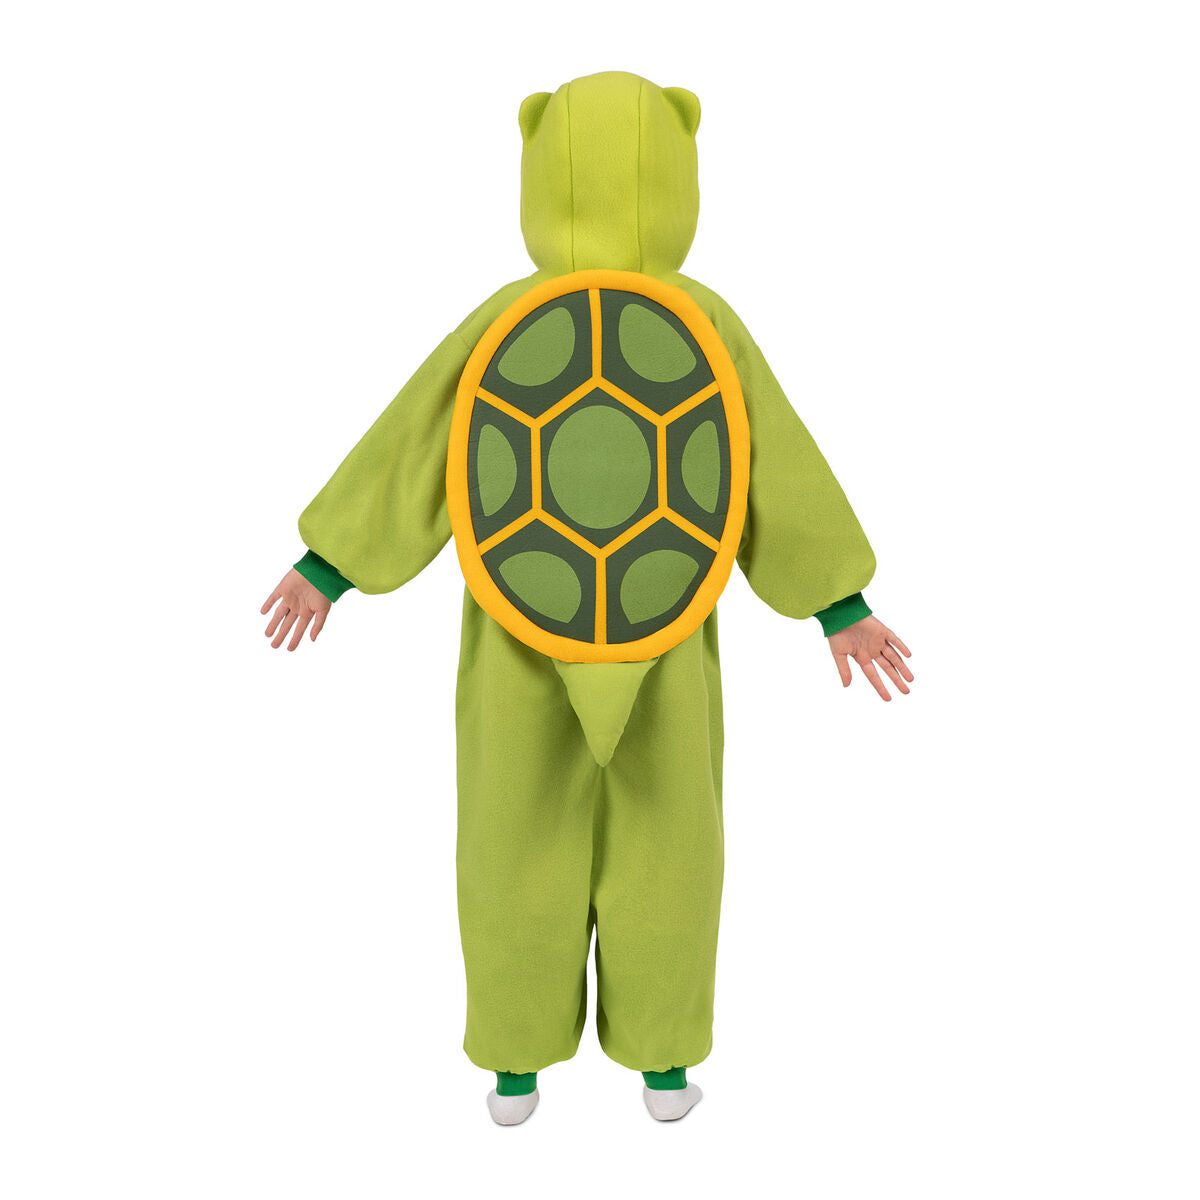 Verkleidung für Kinder My Other Me Tortoise Gelb grün Einheitsgröße (2 Stücke)